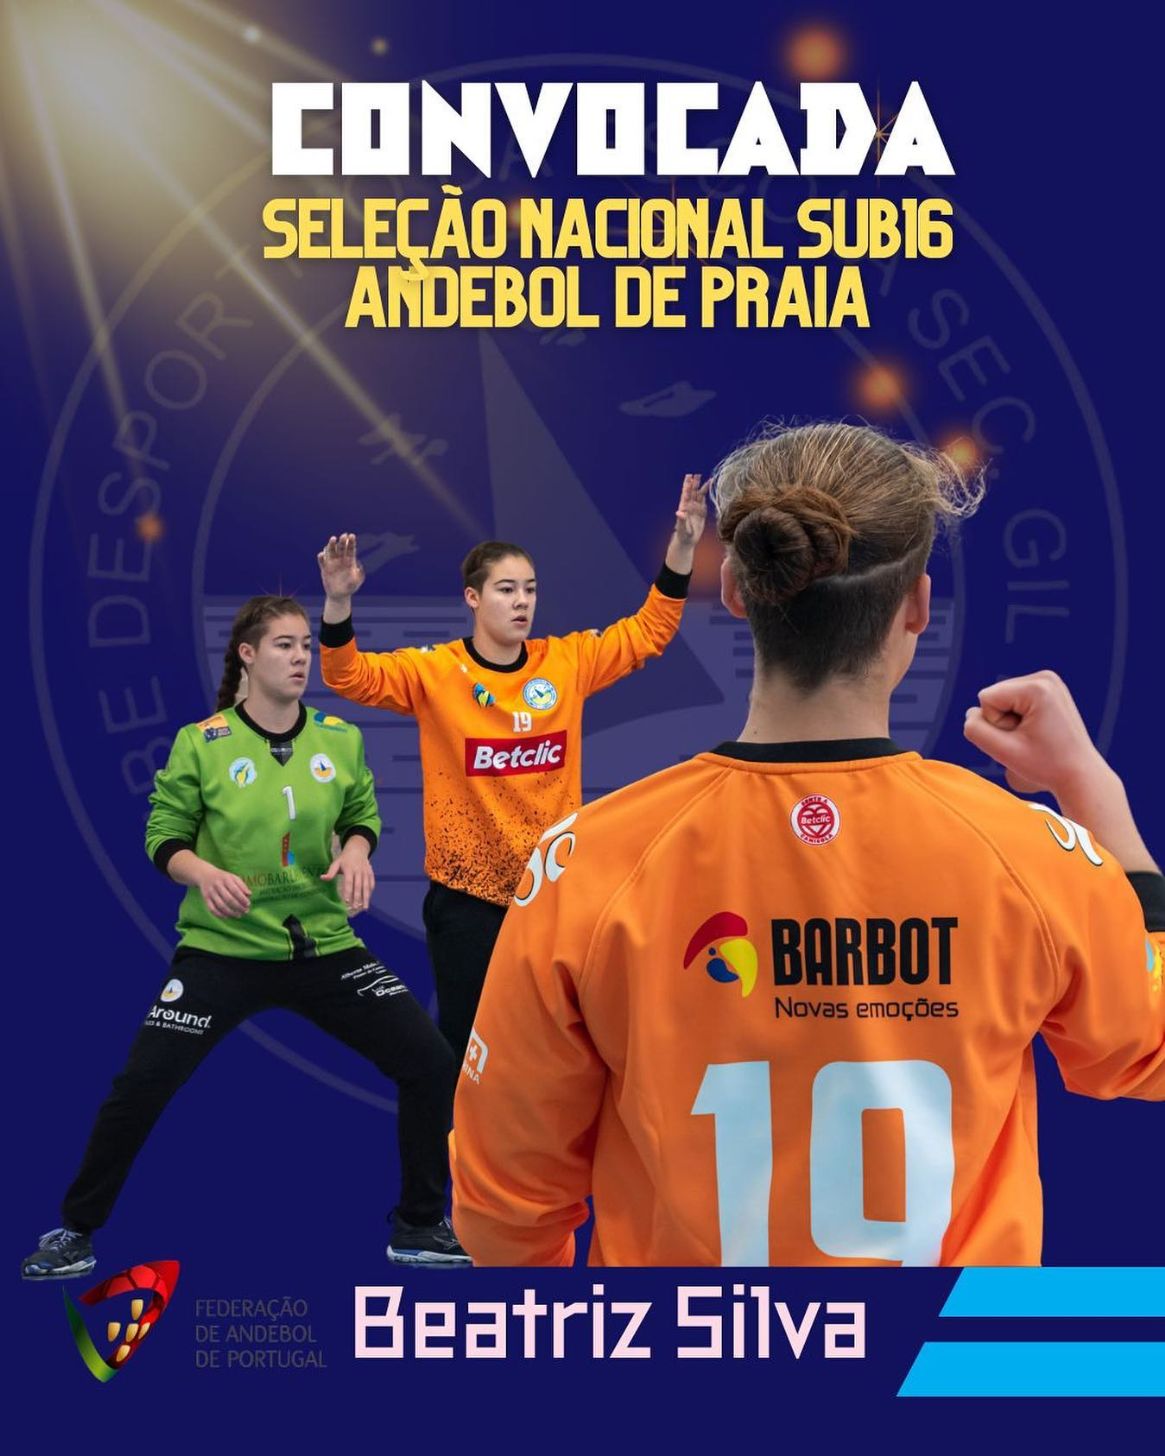 Lacobrigense Beatriz Silva na Selecção Nacional sub-16 Feminina de Andebol de Praia para o Campeonato da Europa – “Beach Handball YAC 16 Euro 2022”